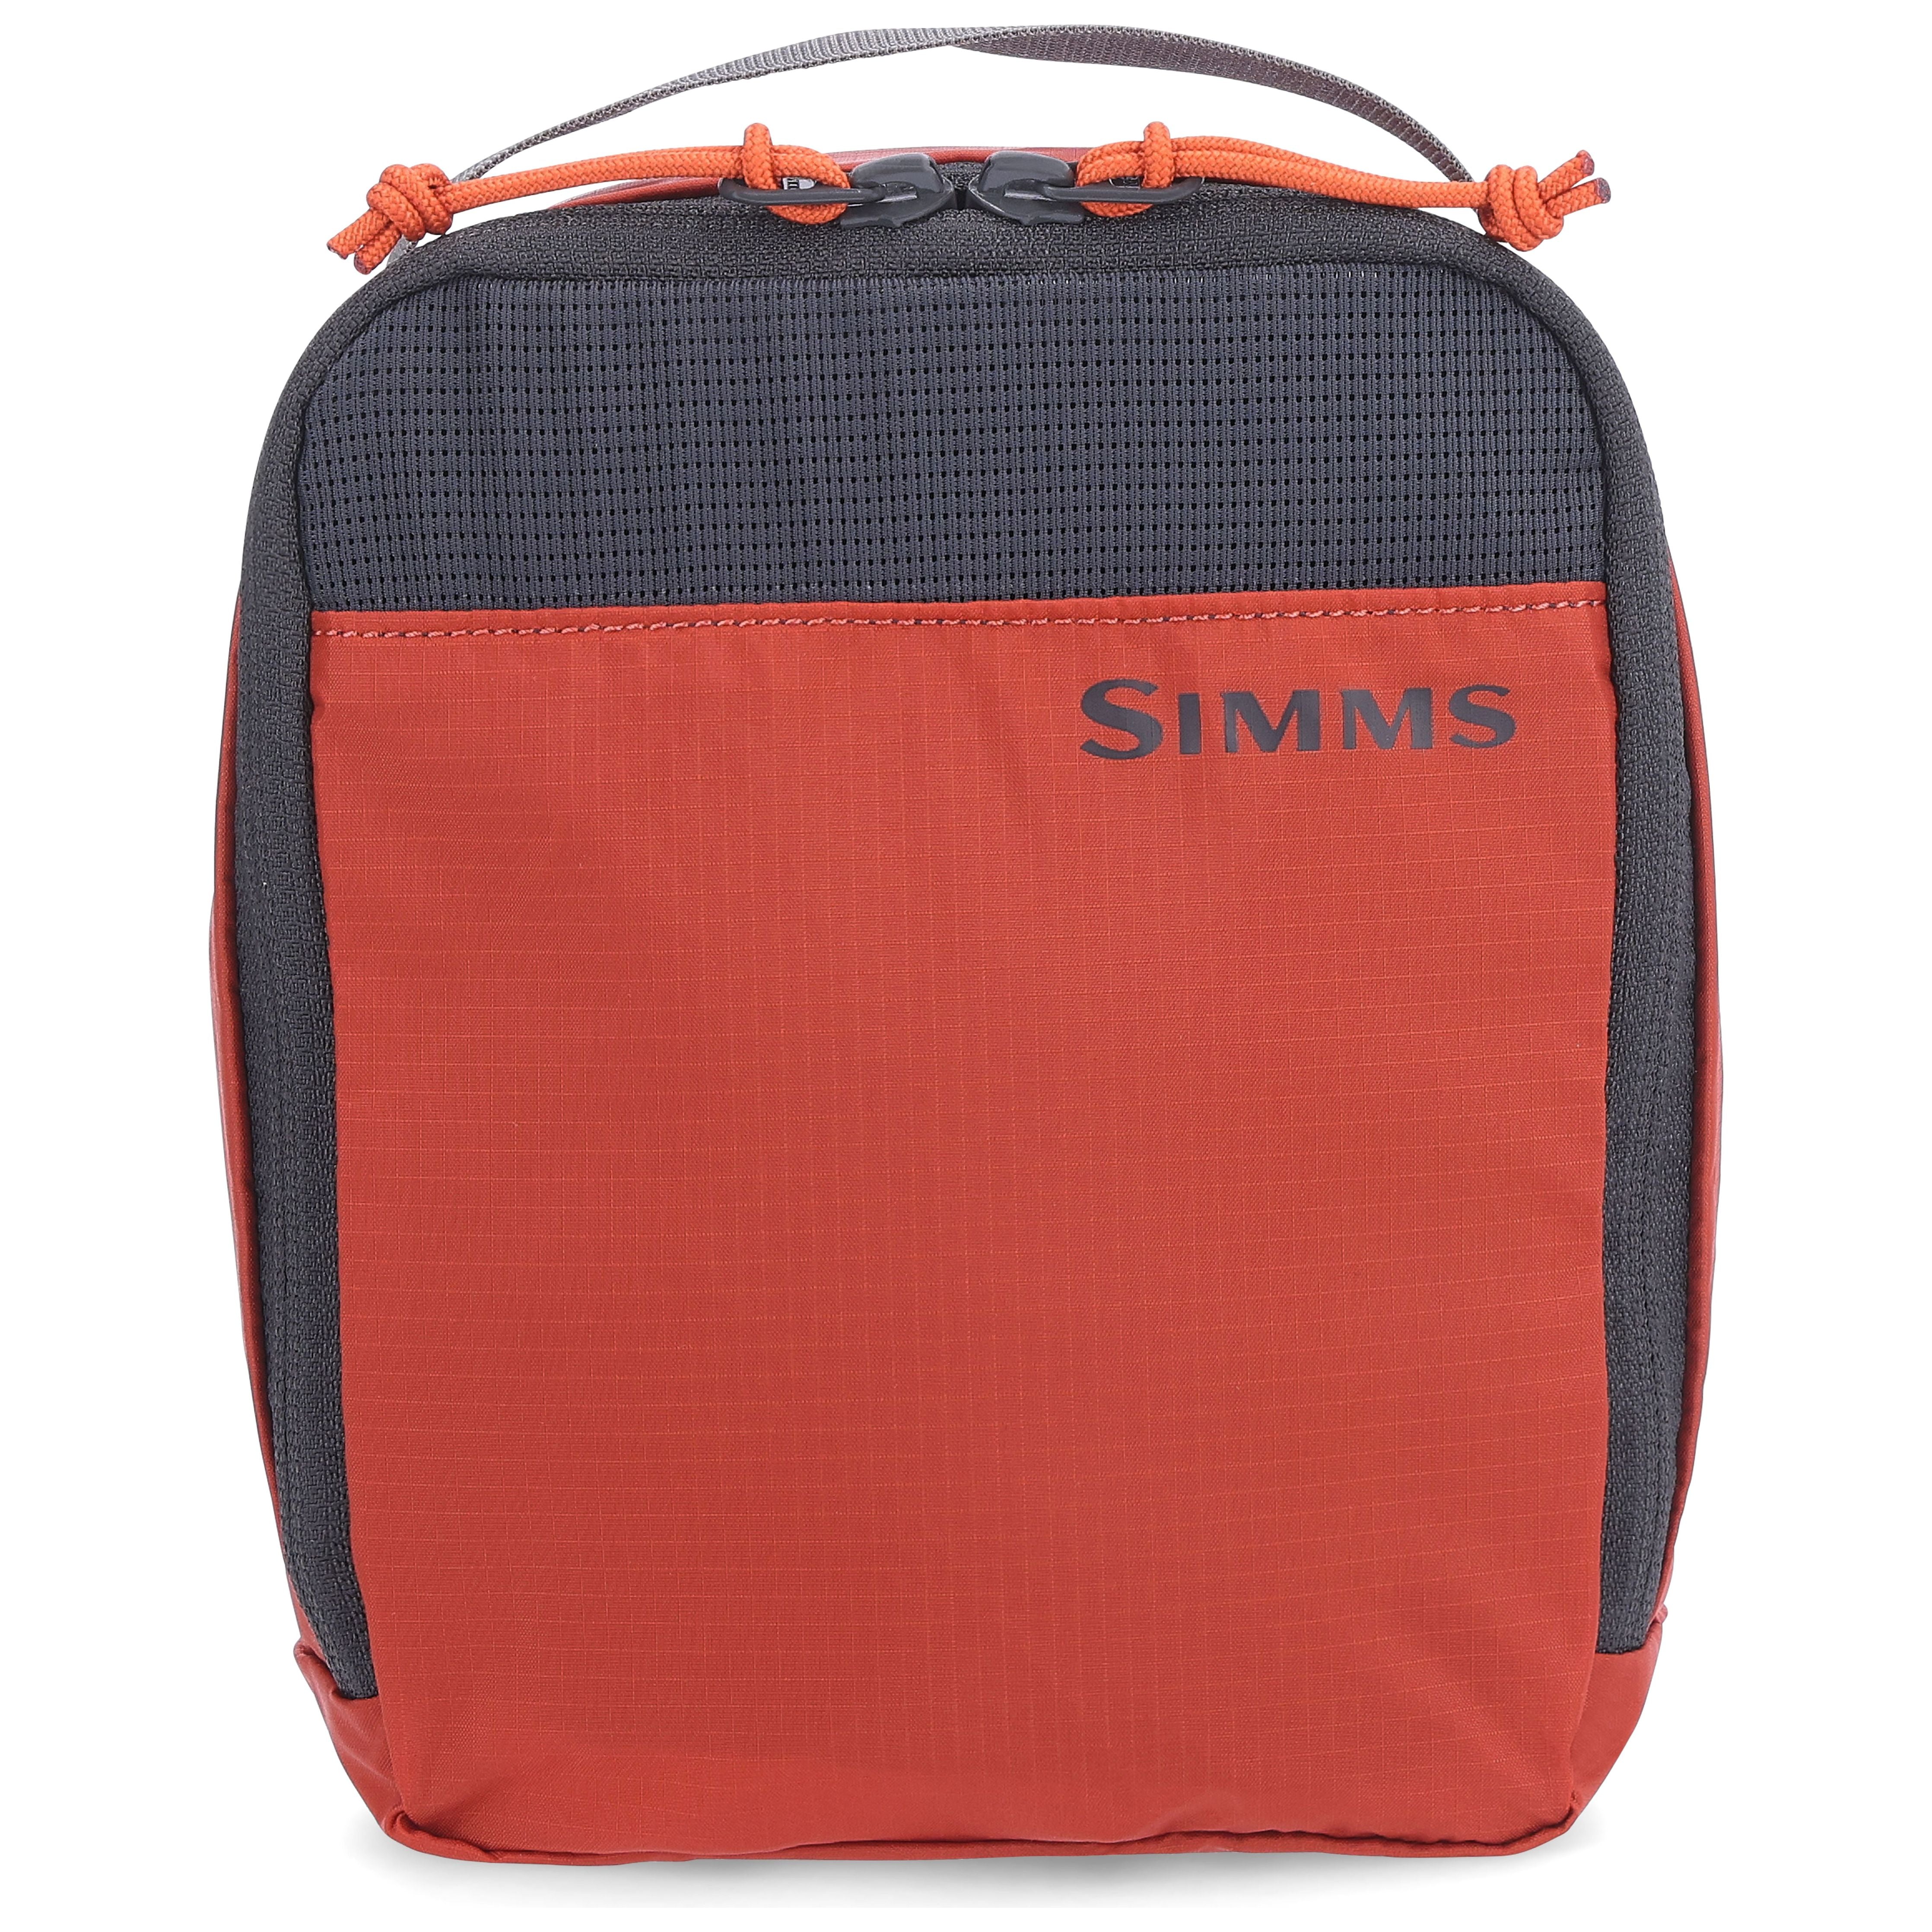 Simms GTS Packing Kit 3 Pack Simms Orange Image 04